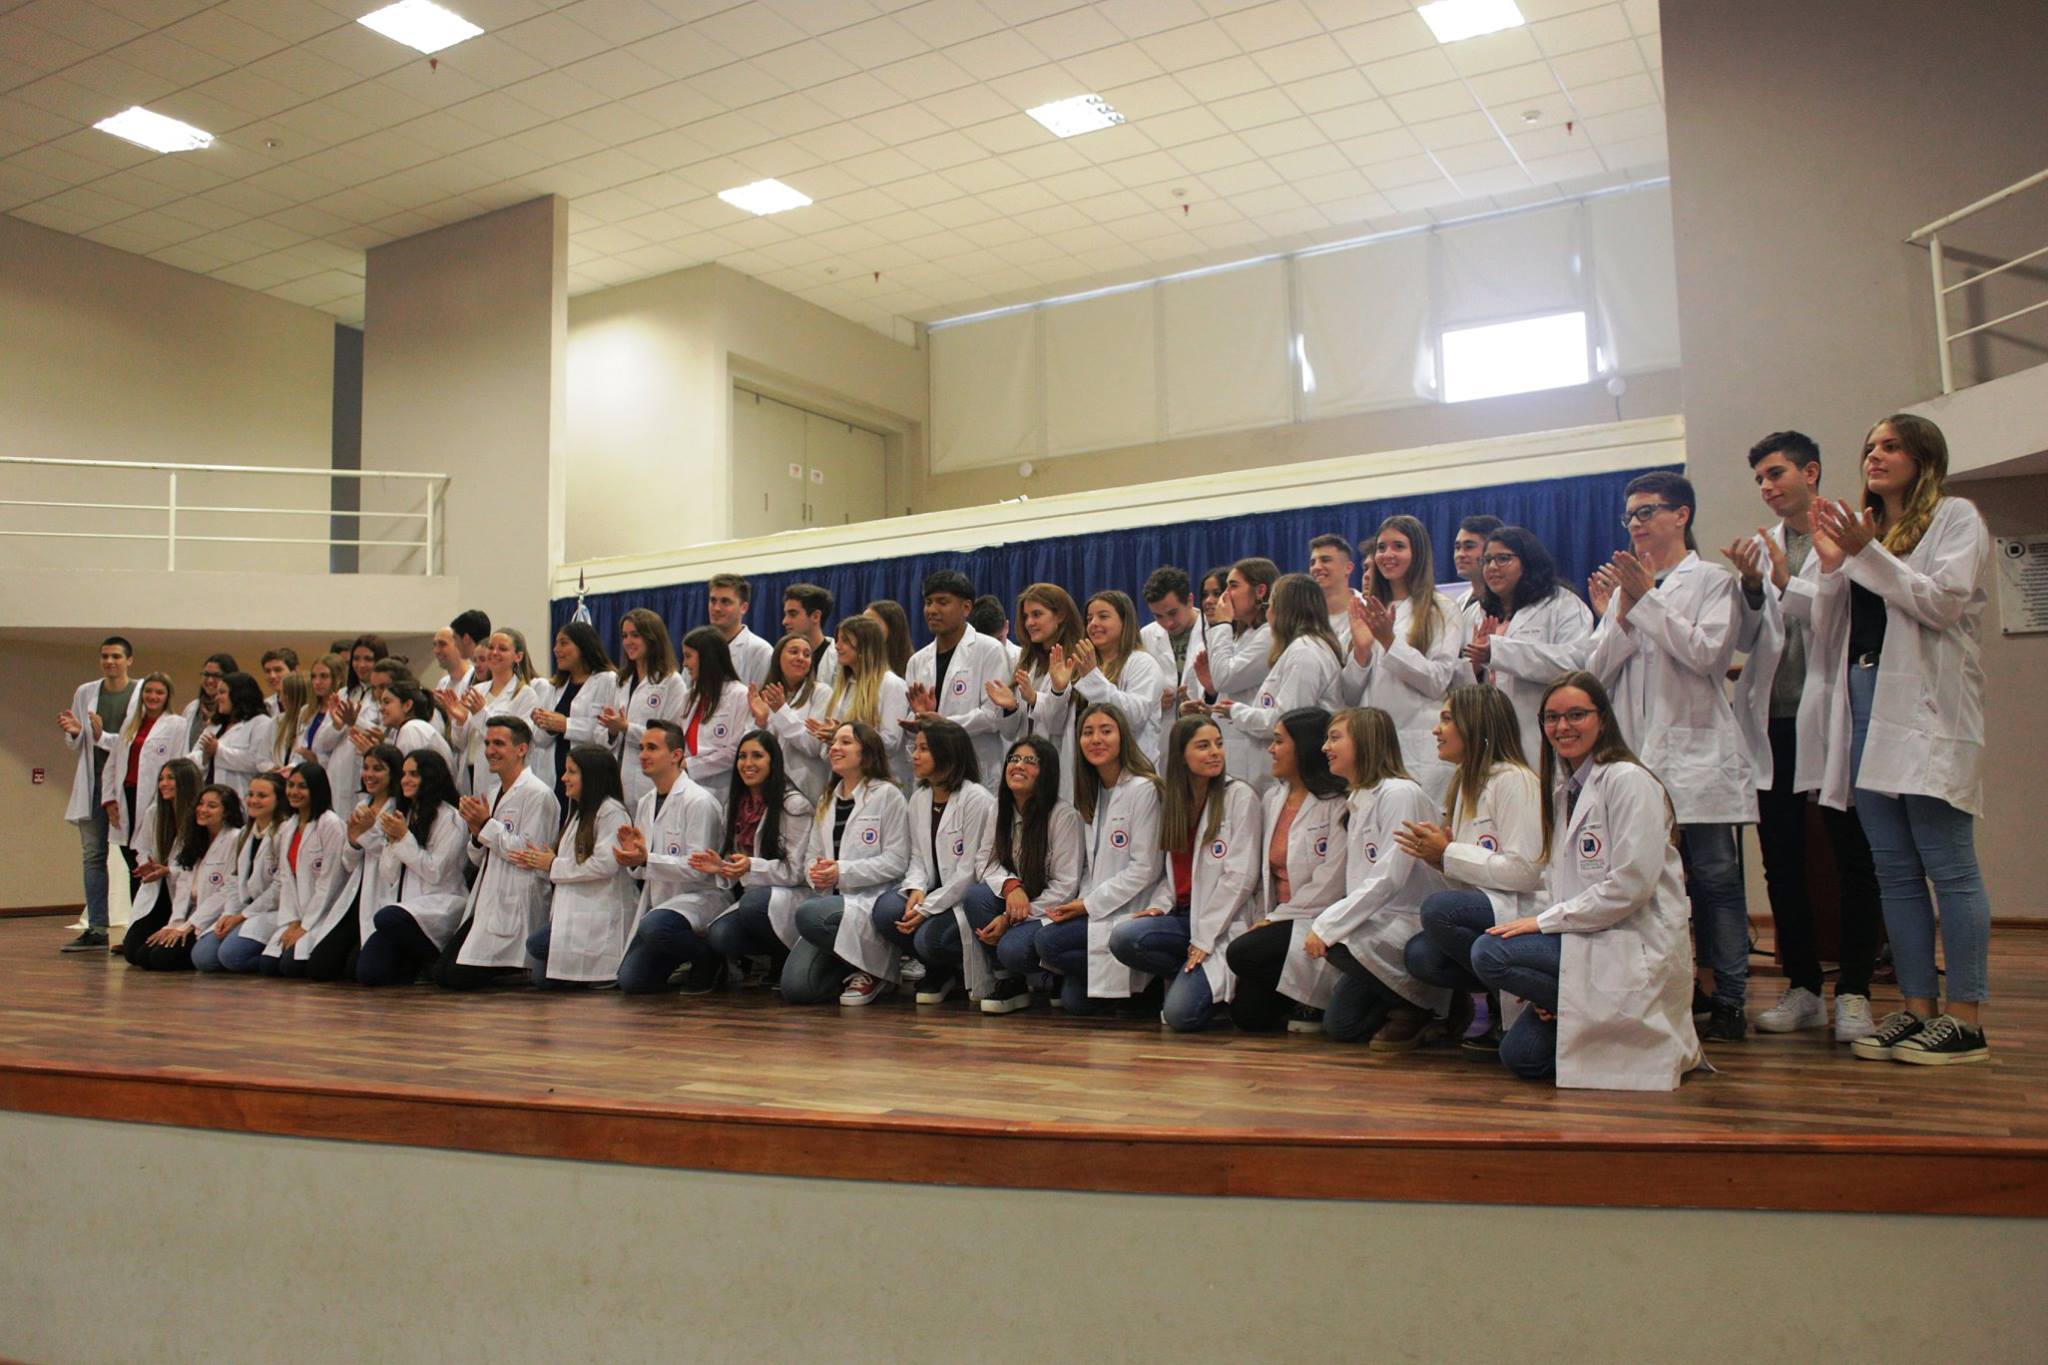 Sesenta estudiantes recibieron sus guardapolvos blancos